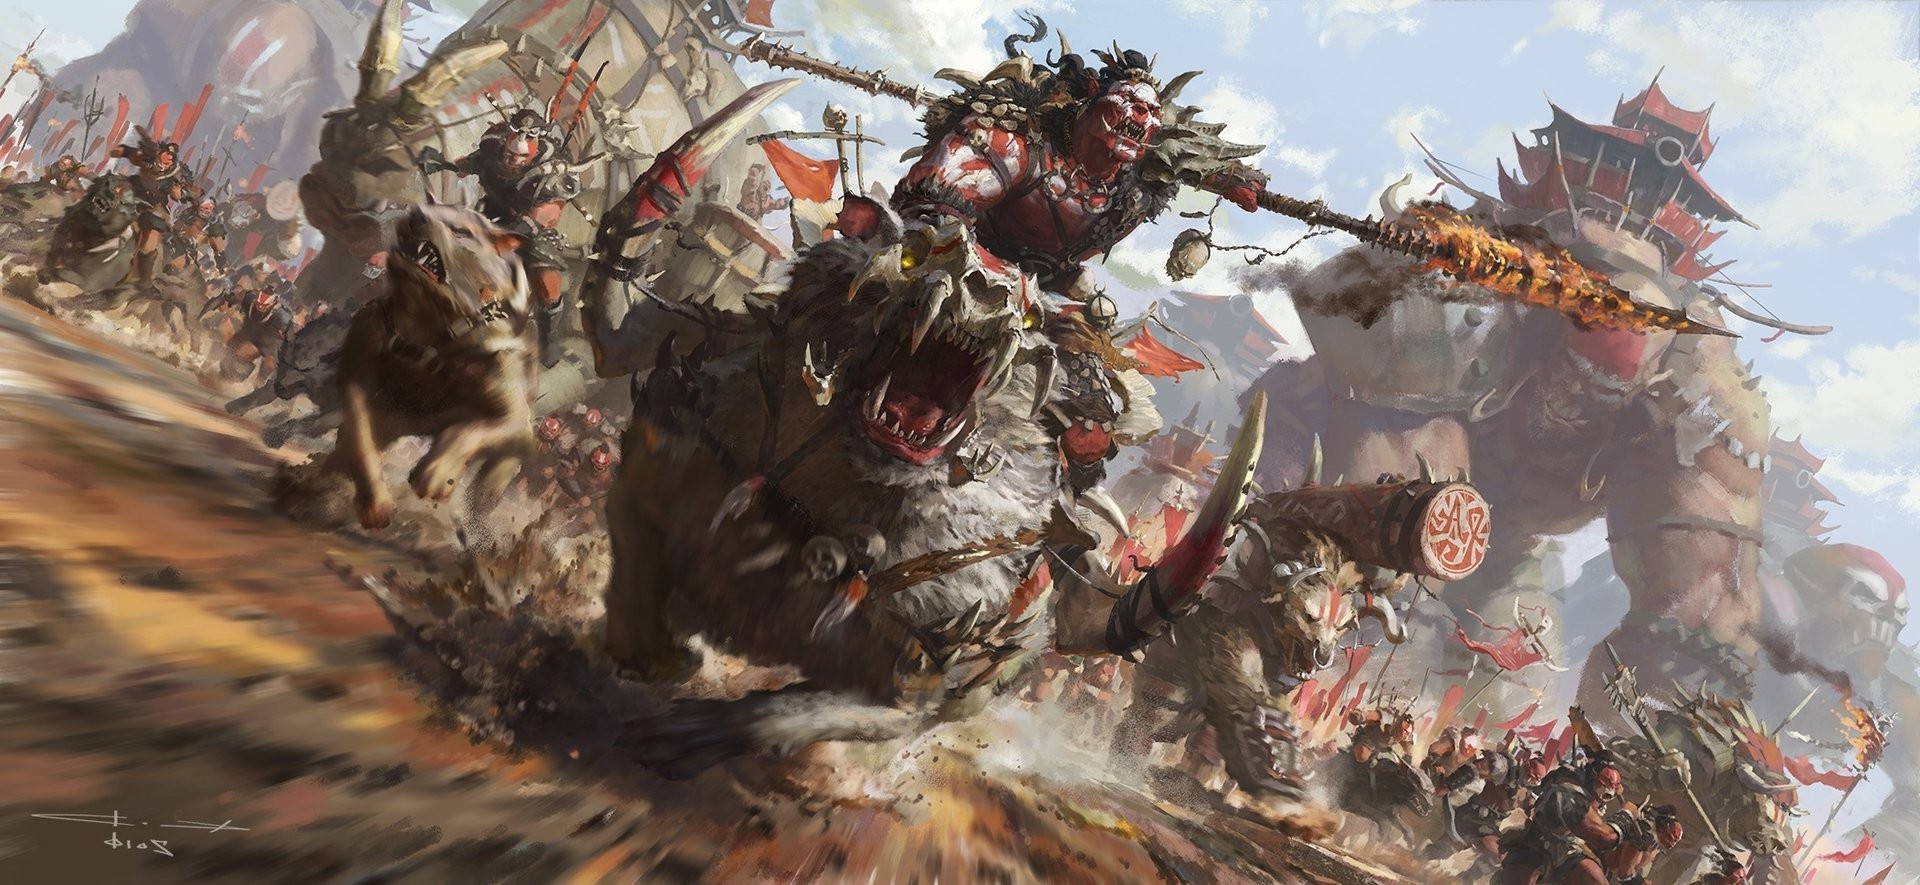 1080p World Of Warcraft Fan Art - HD Wallpaper 